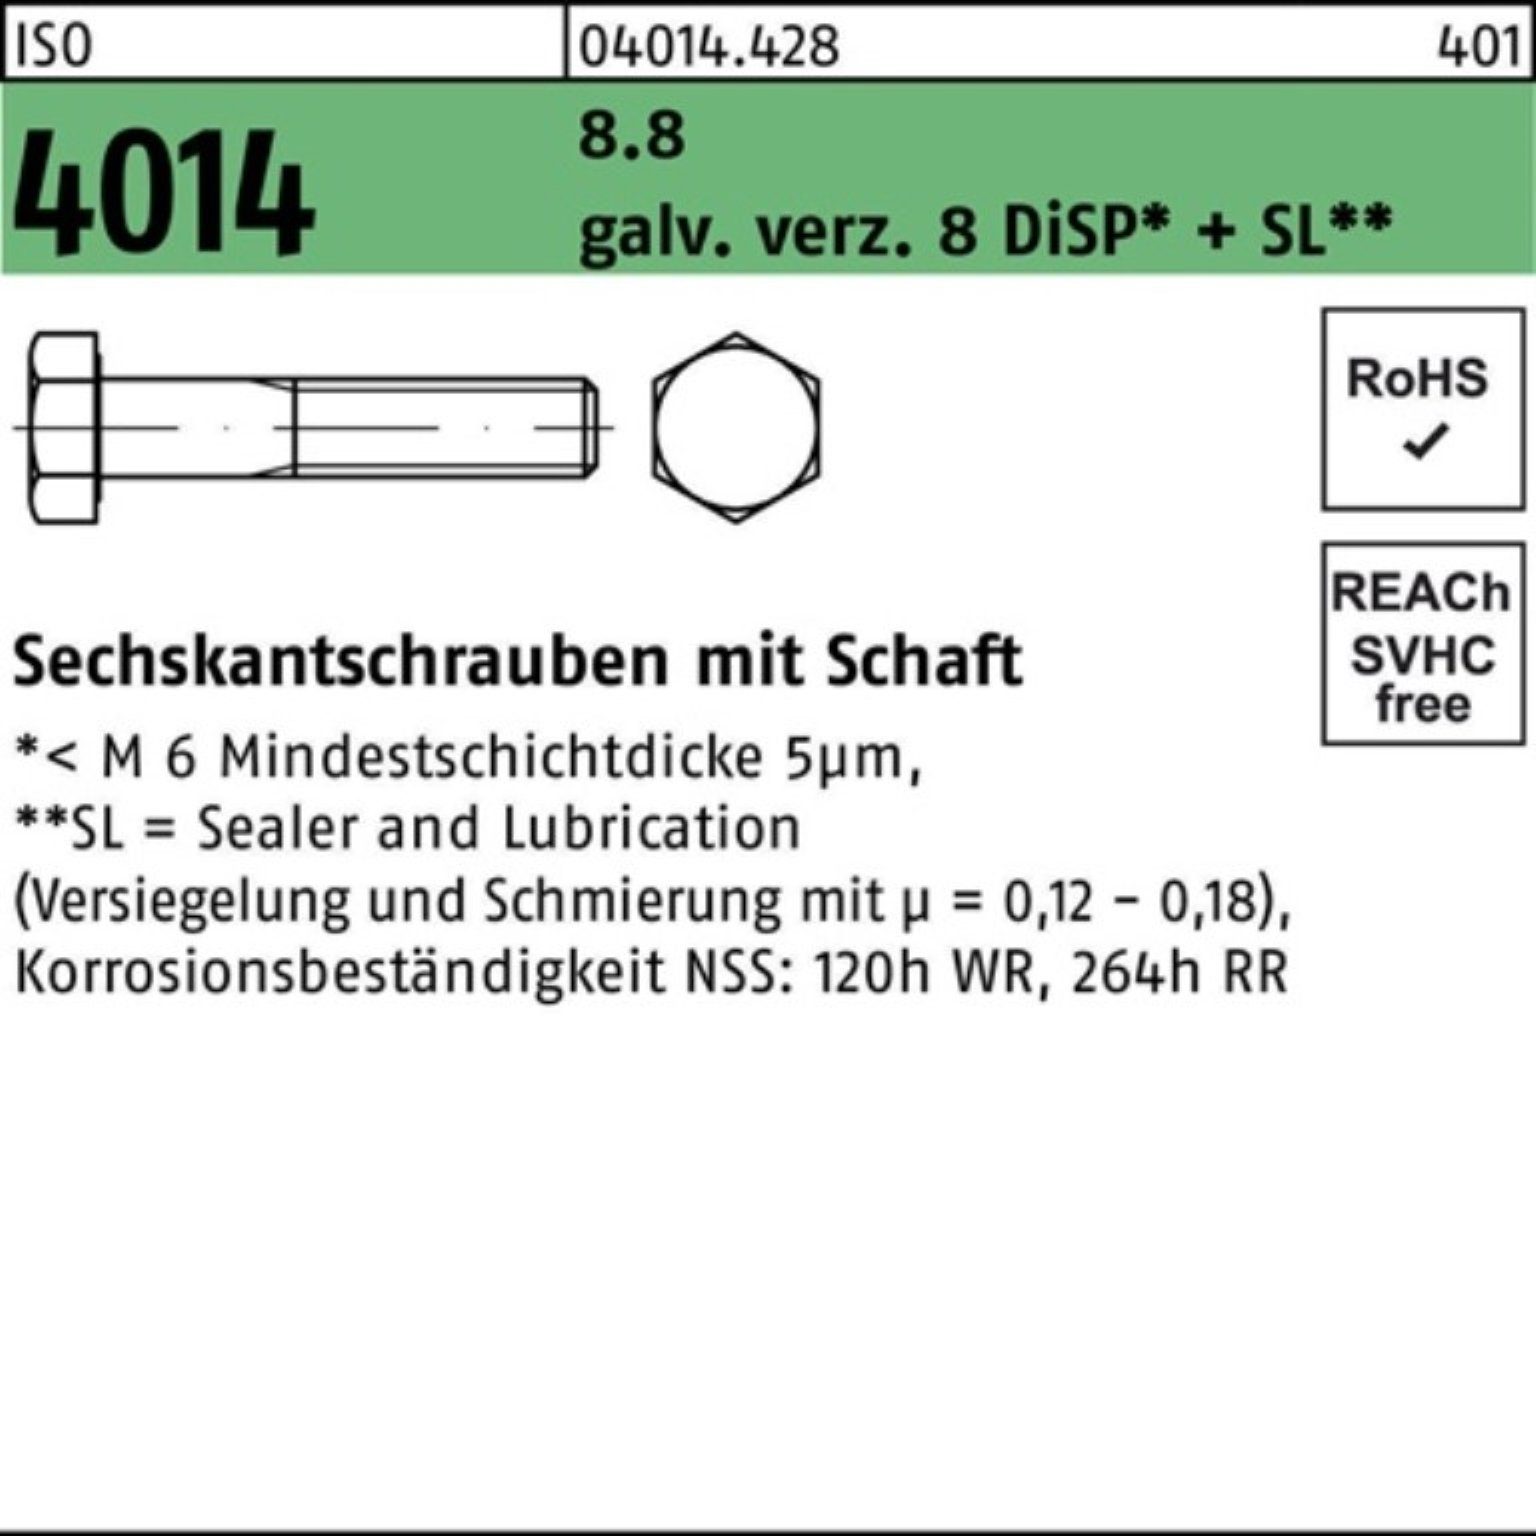 Bufab Sechskantschraube 200er Pack Sechskantschraube ISO 4014 Schaft M6x40 8.8 galv.verz. 8 Di